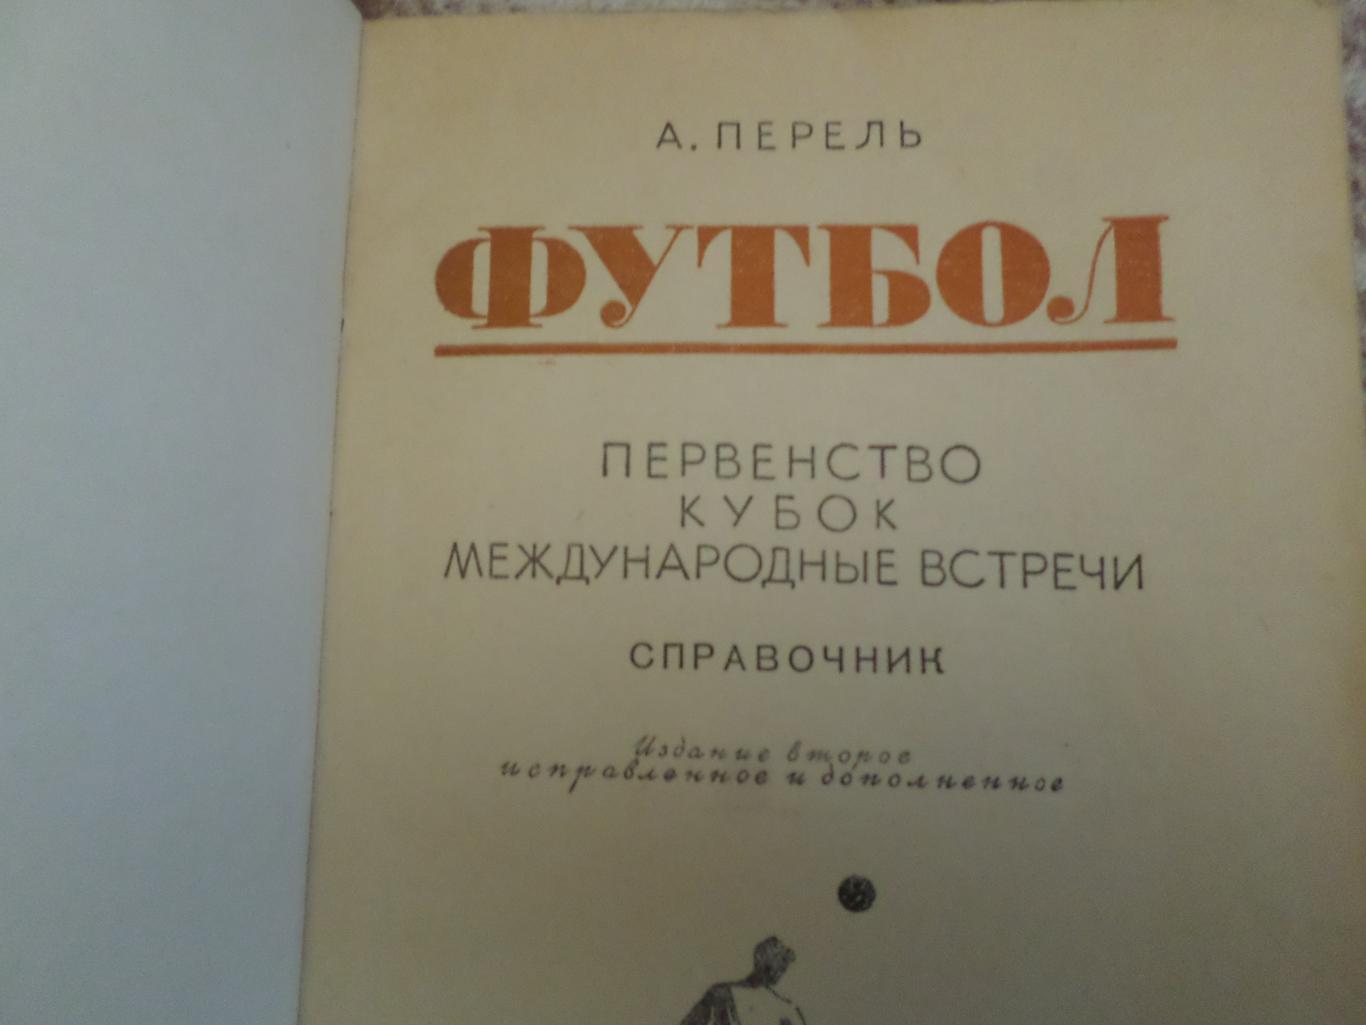 А.Перель - Футбол. 1950 г Справочник. 1